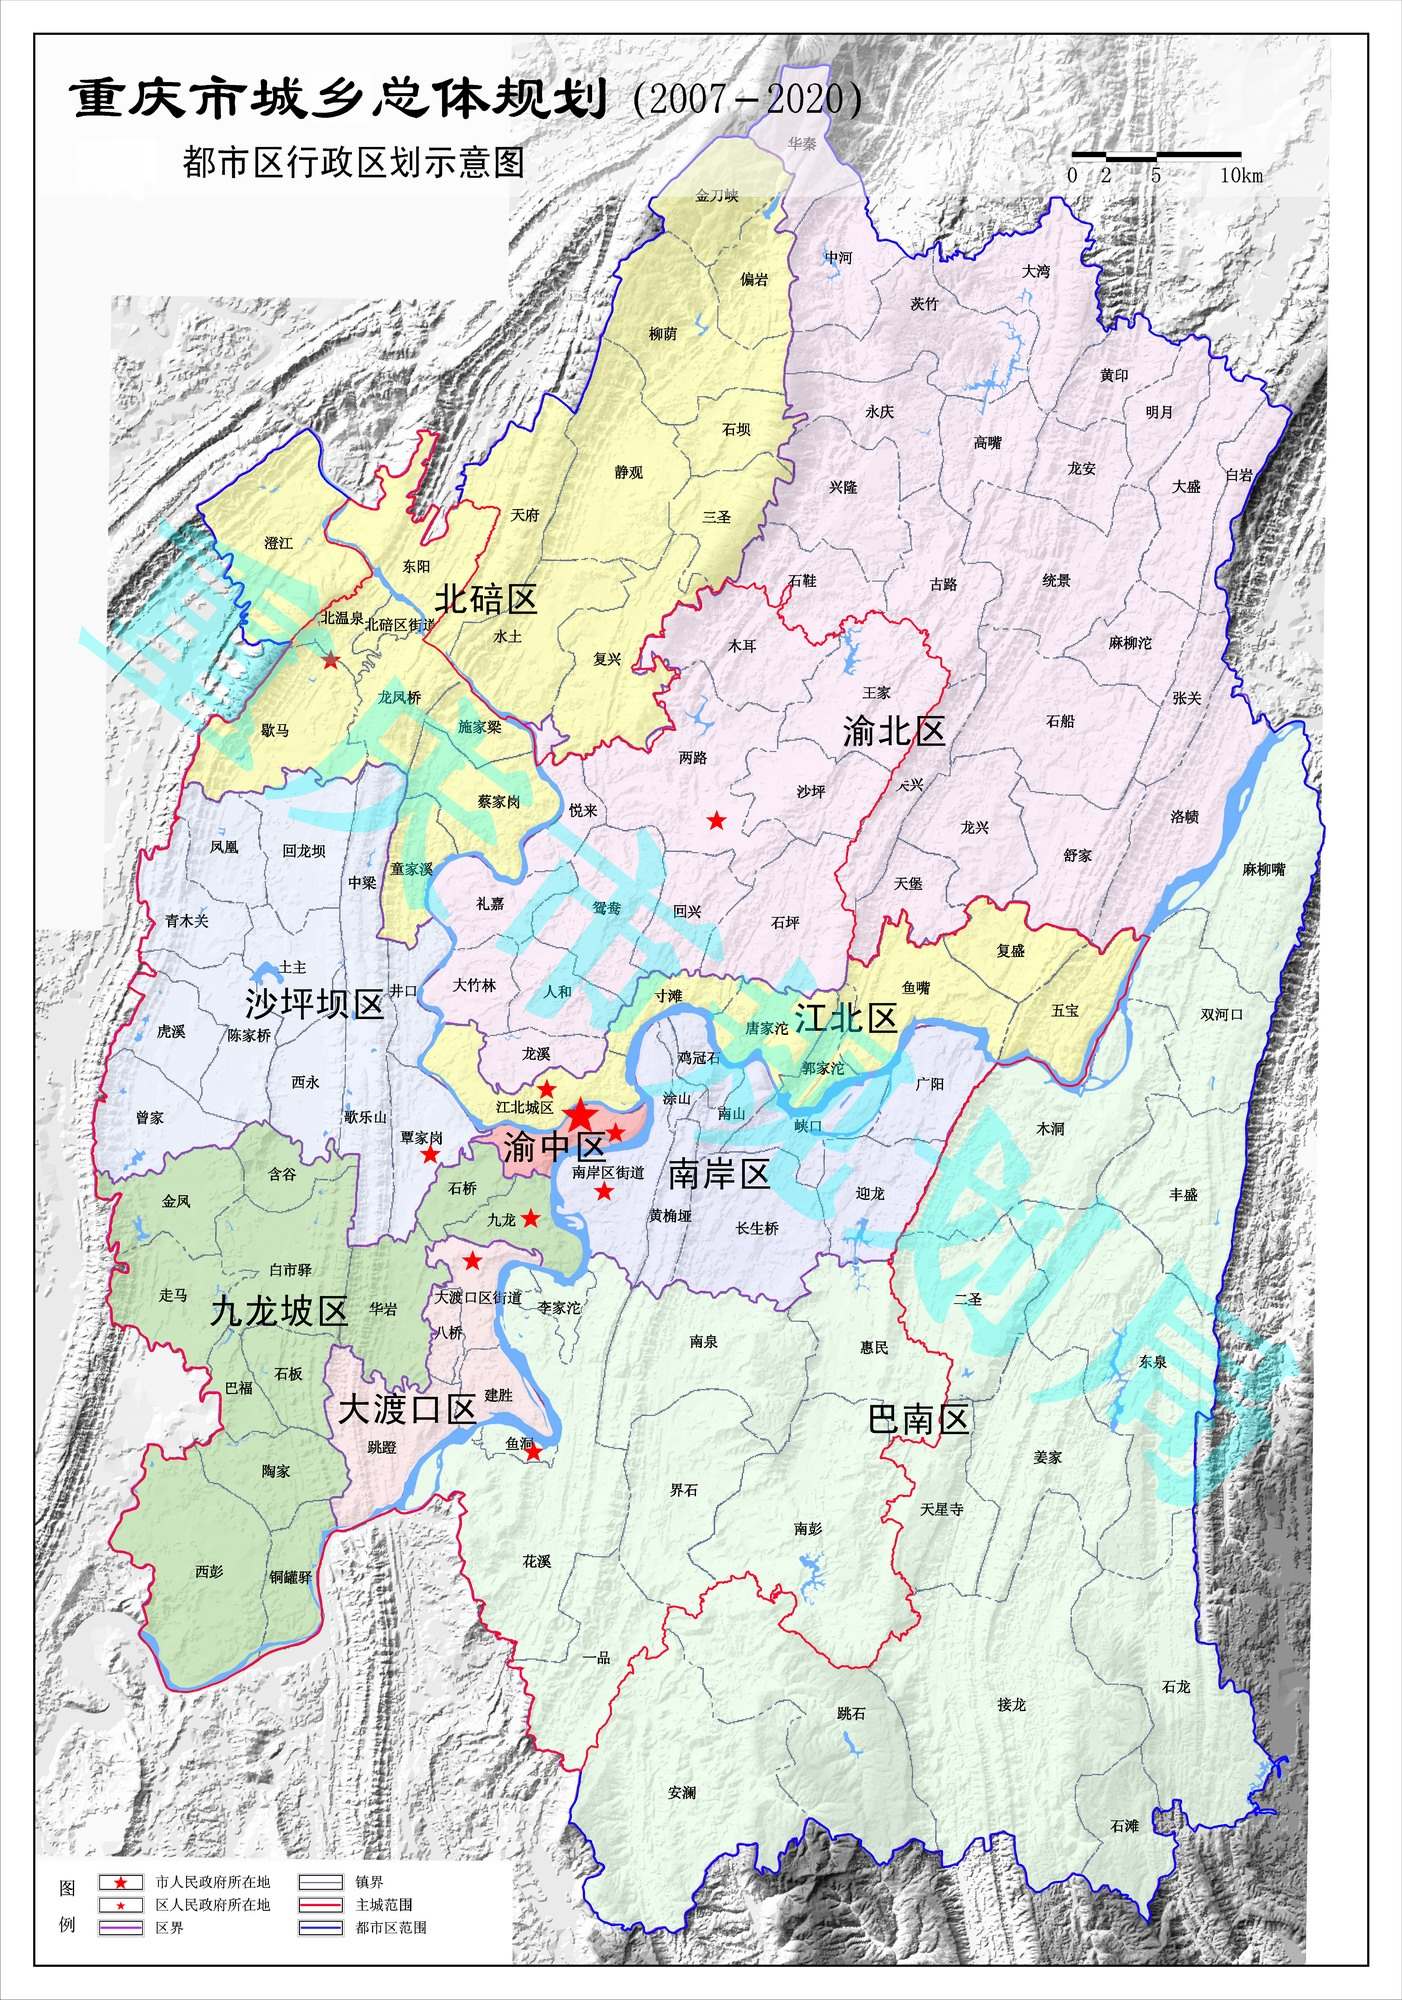 你的地图似乎很旧,我上传一个2007年重庆市规划局发的区划图,谁要有